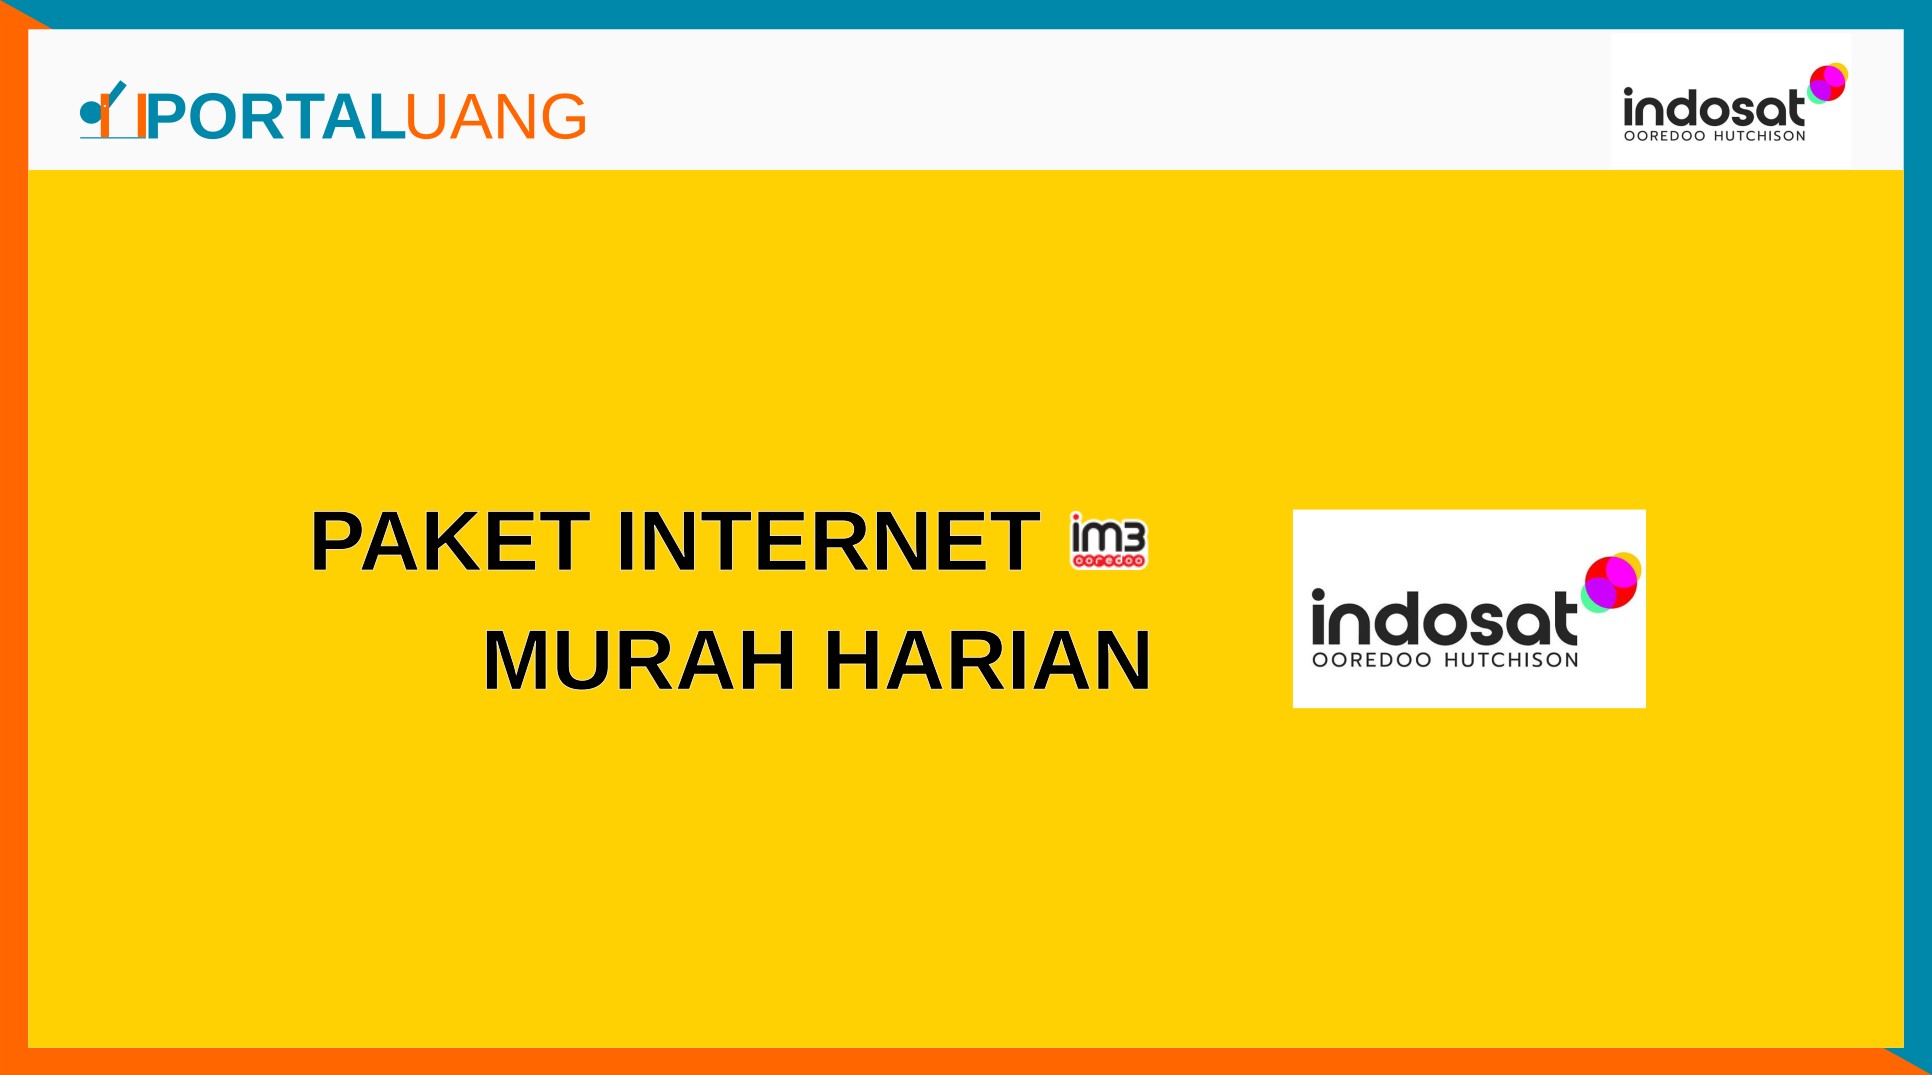 2 Paket Internet Indosat (IM3) Murah Harian (1 Hari) Juni 2022